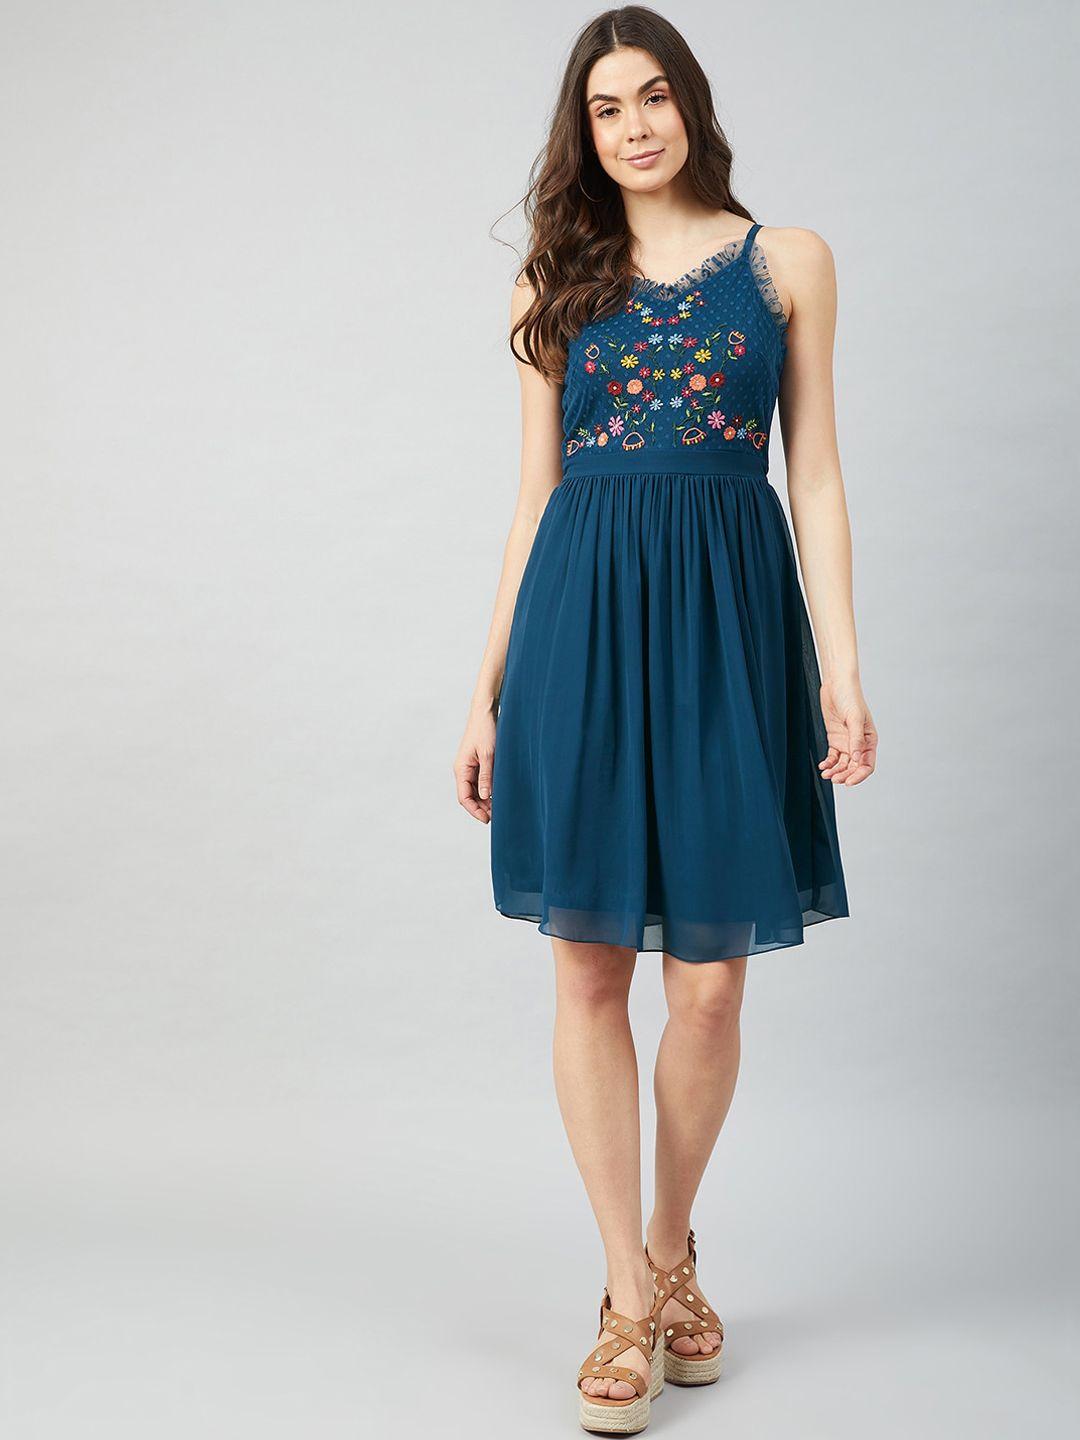 athena teal blue floral embroidered shoulder straps georgette fit and flare dress